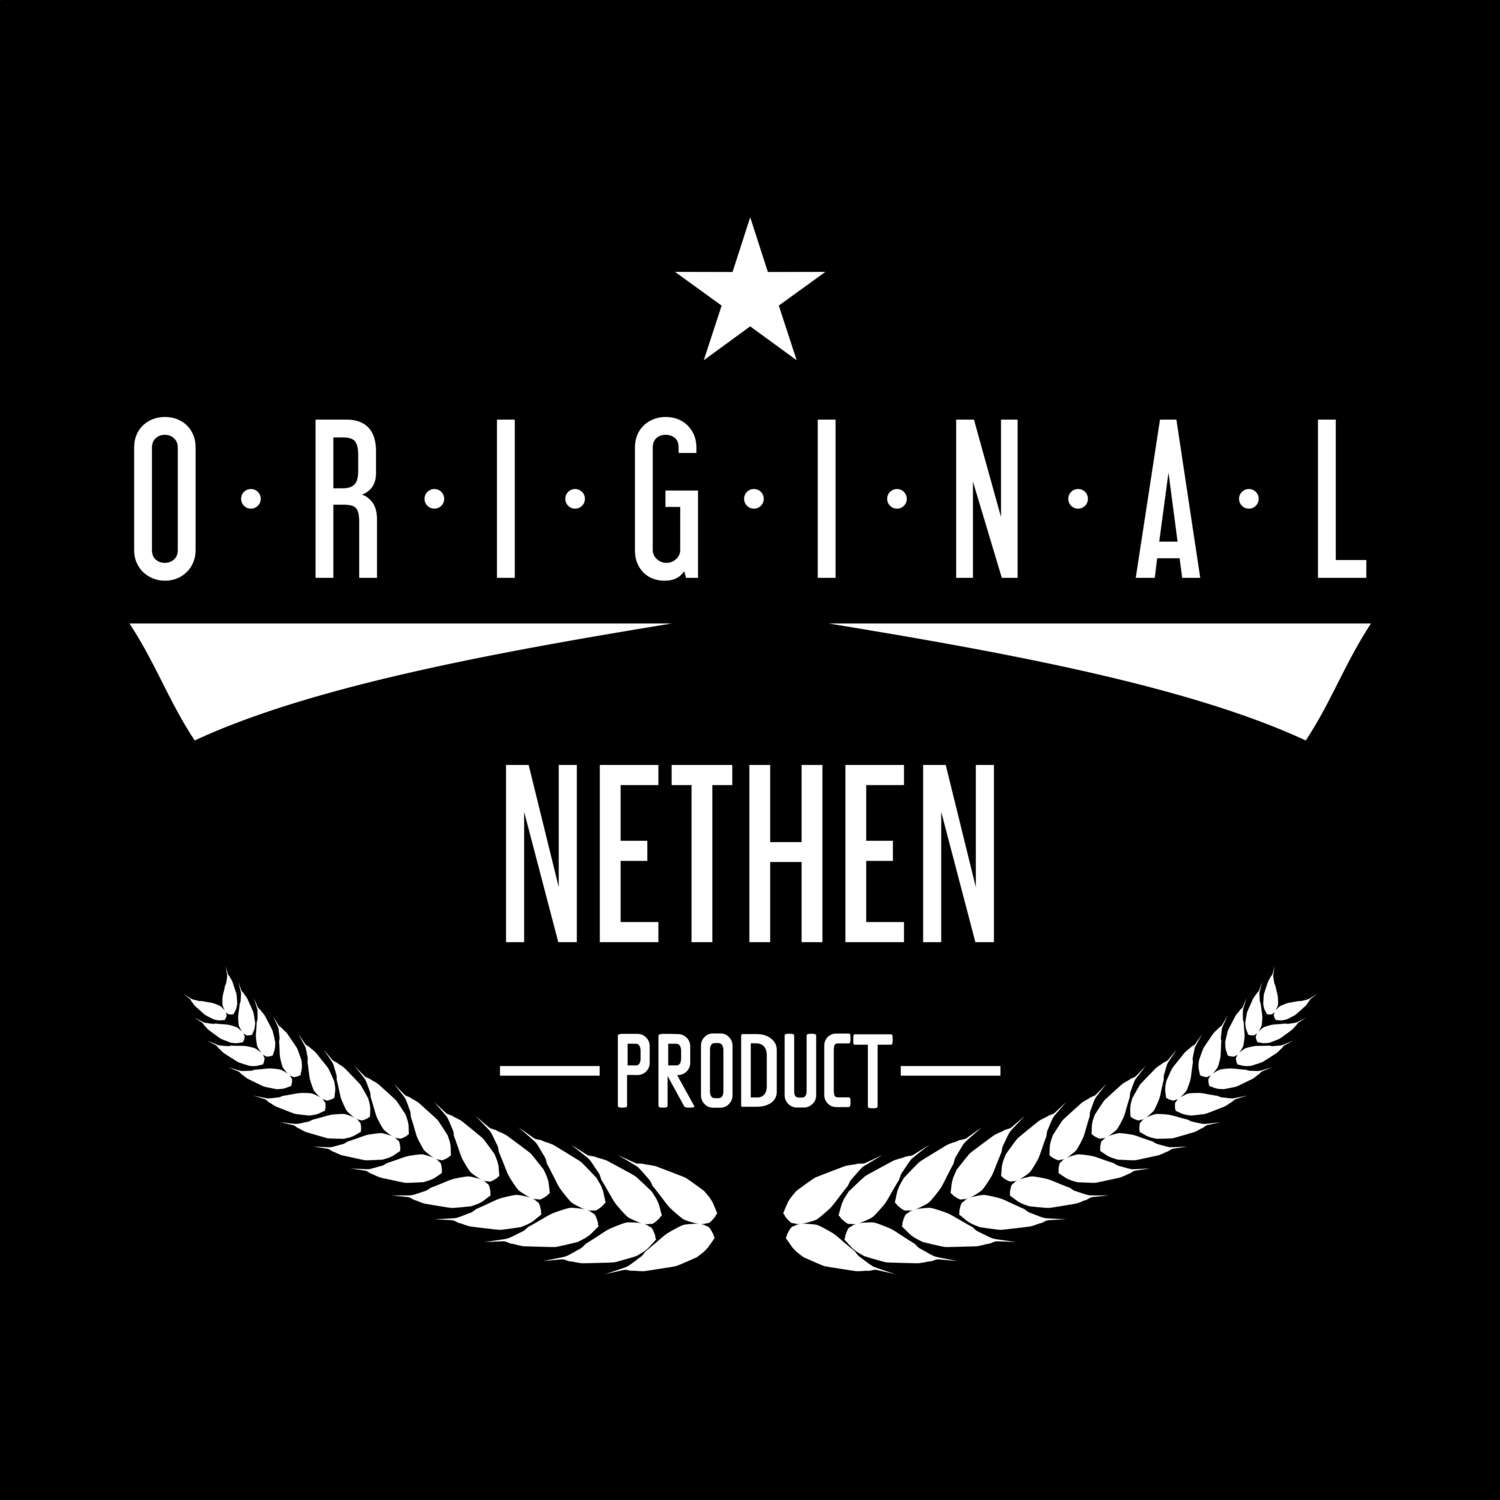 Nethen T-Shirt »Original Product«